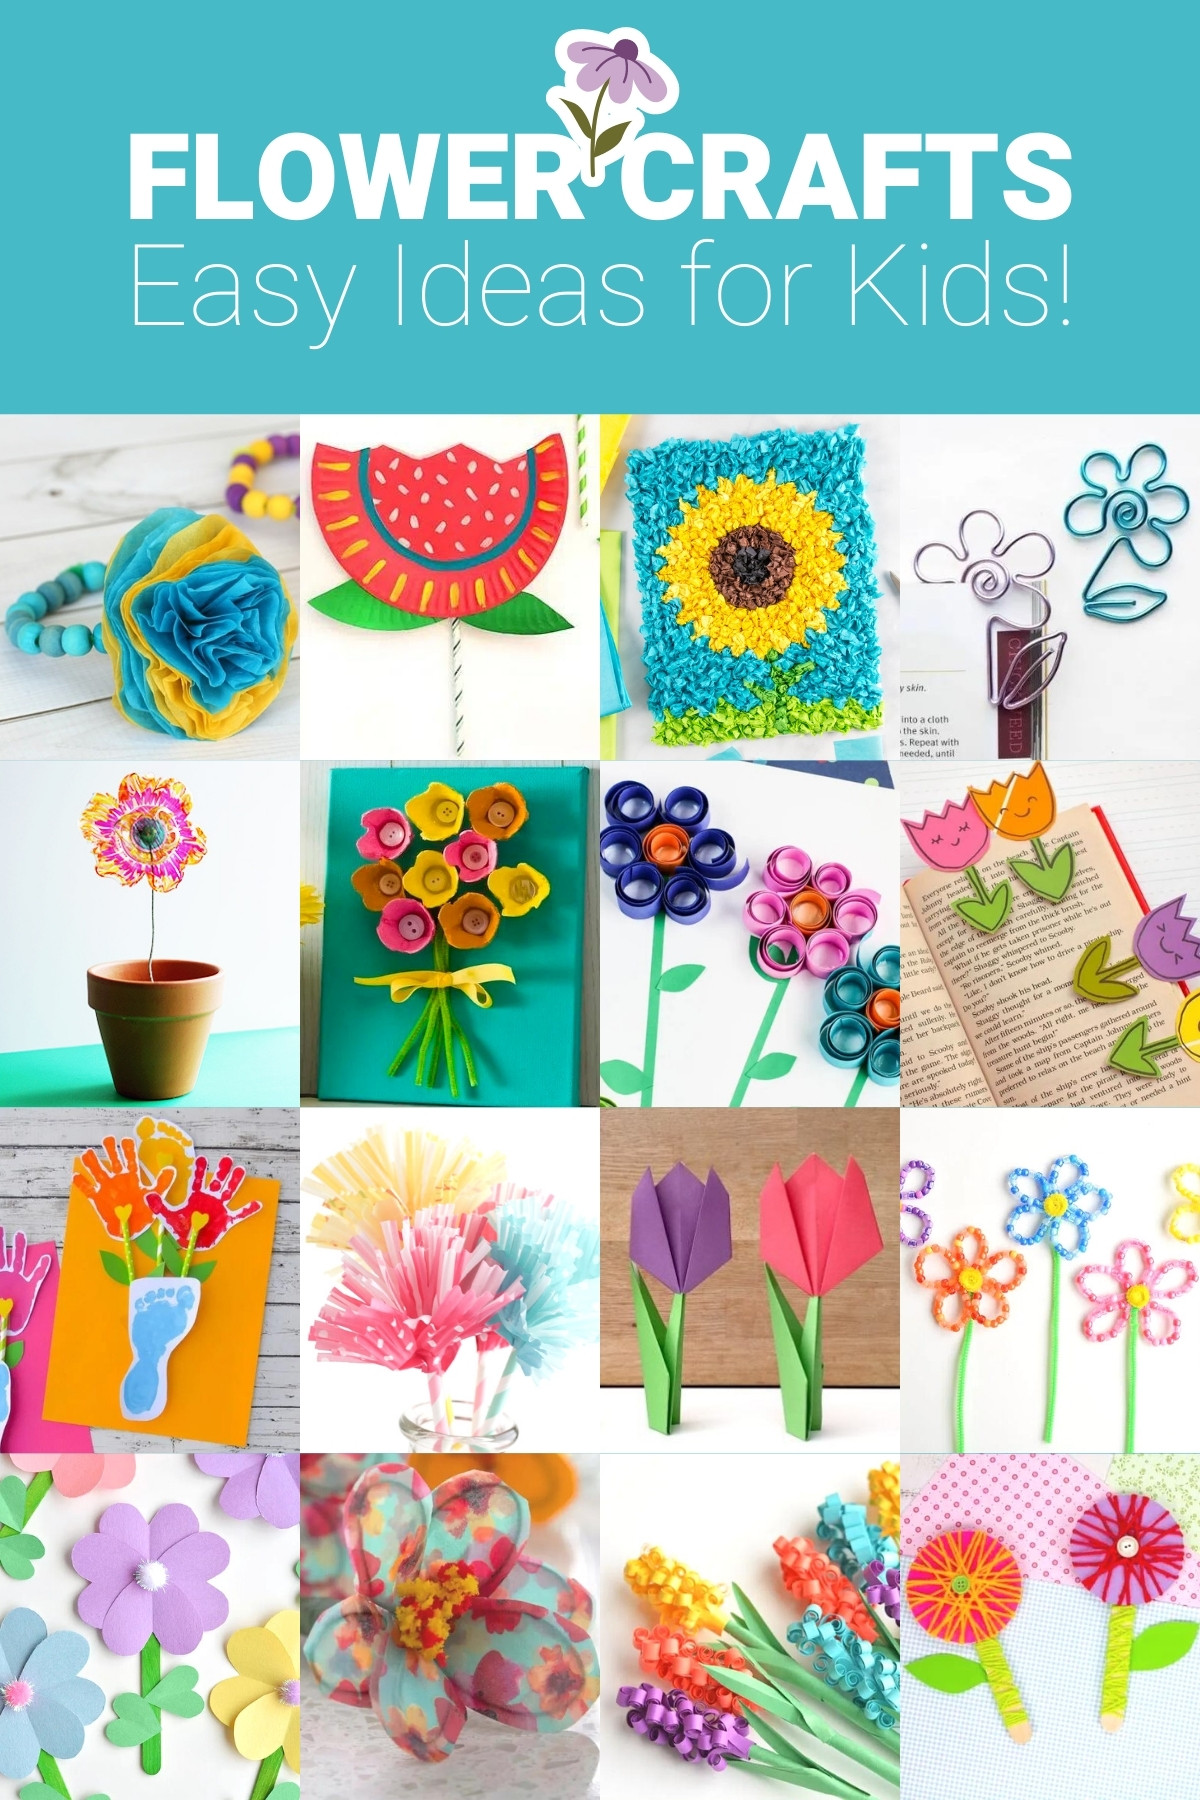 Paper Flower Craft  Flower crafts, Spring crafts for kids, Paper flower  crafts